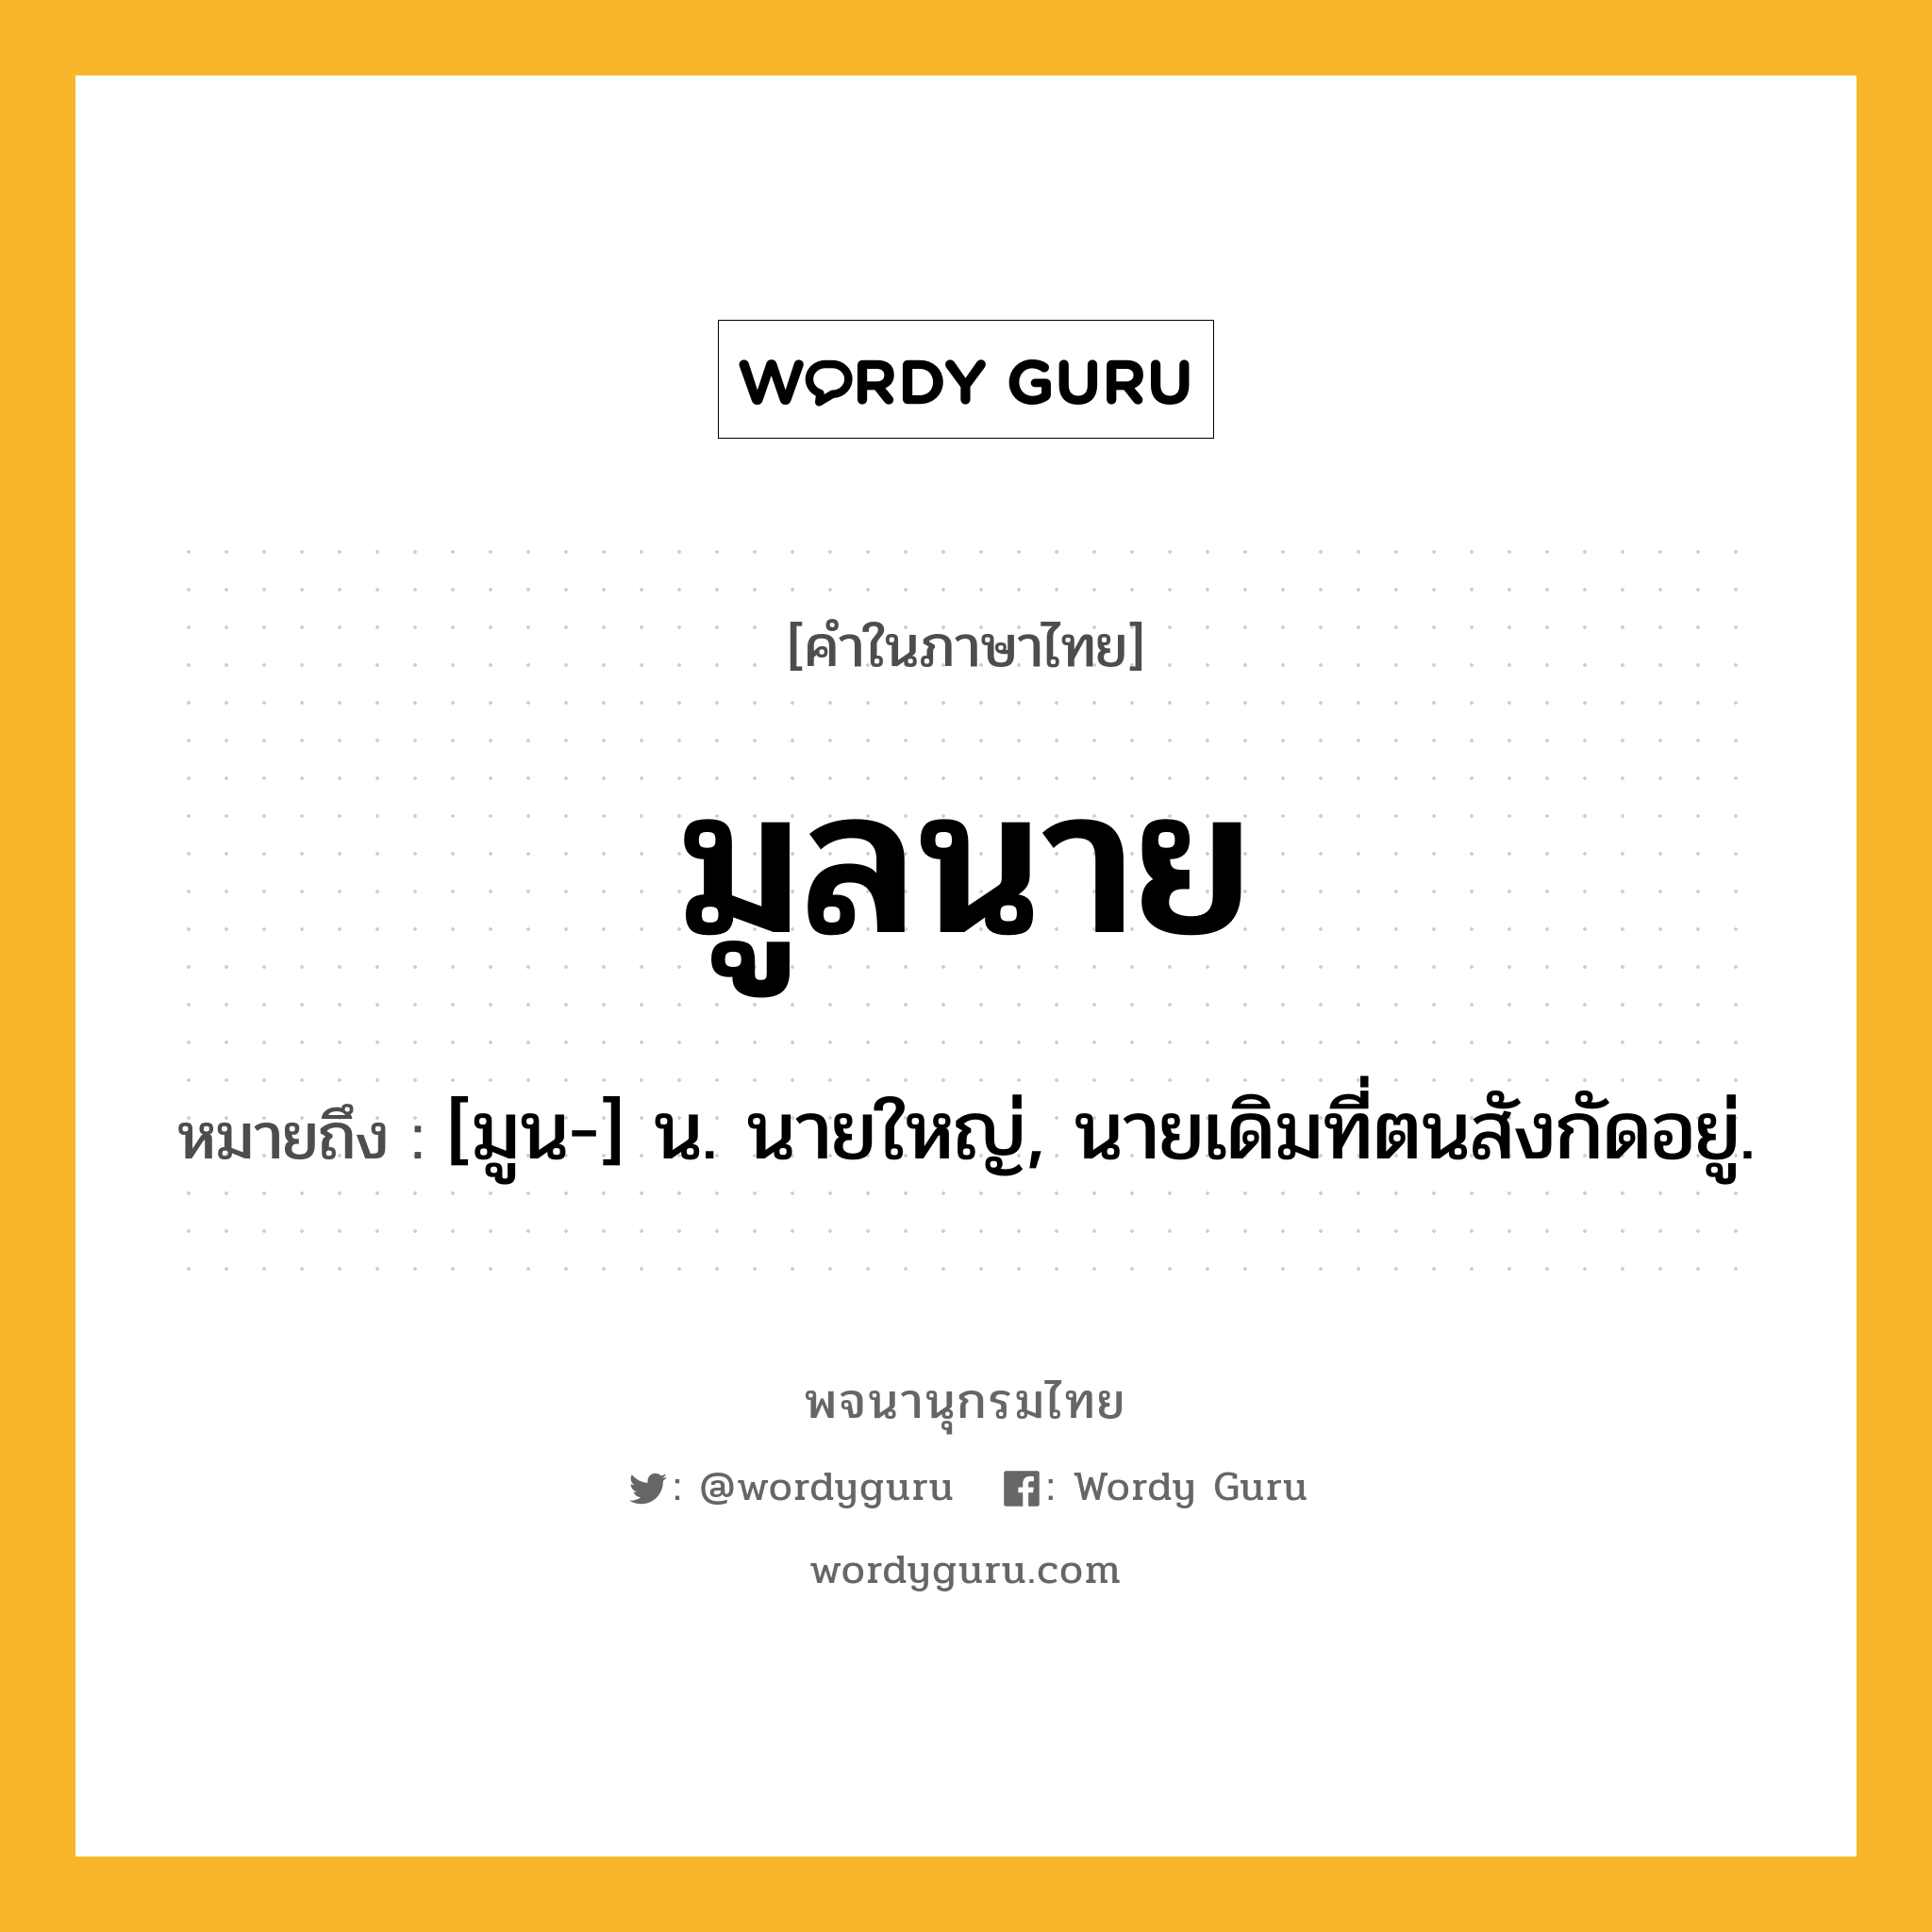 มูลนาย หมายถึงอะไร?, คำในภาษาไทย มูลนาย หมายถึง [มูน-] น. นายใหญ่, นายเดิมที่ตนสังกัดอยู่.